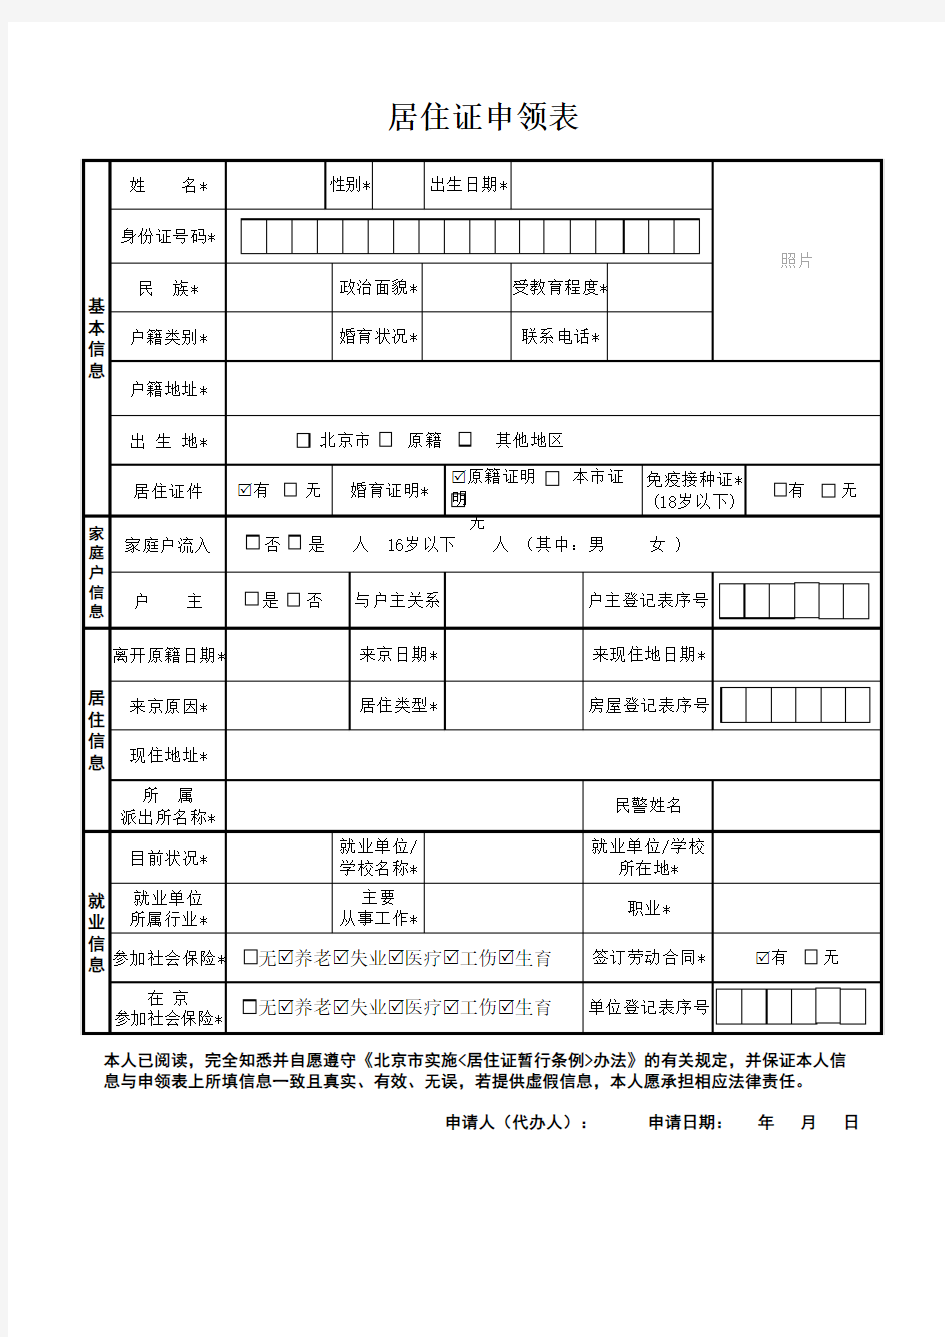 北京市居住证申领表 - 模版